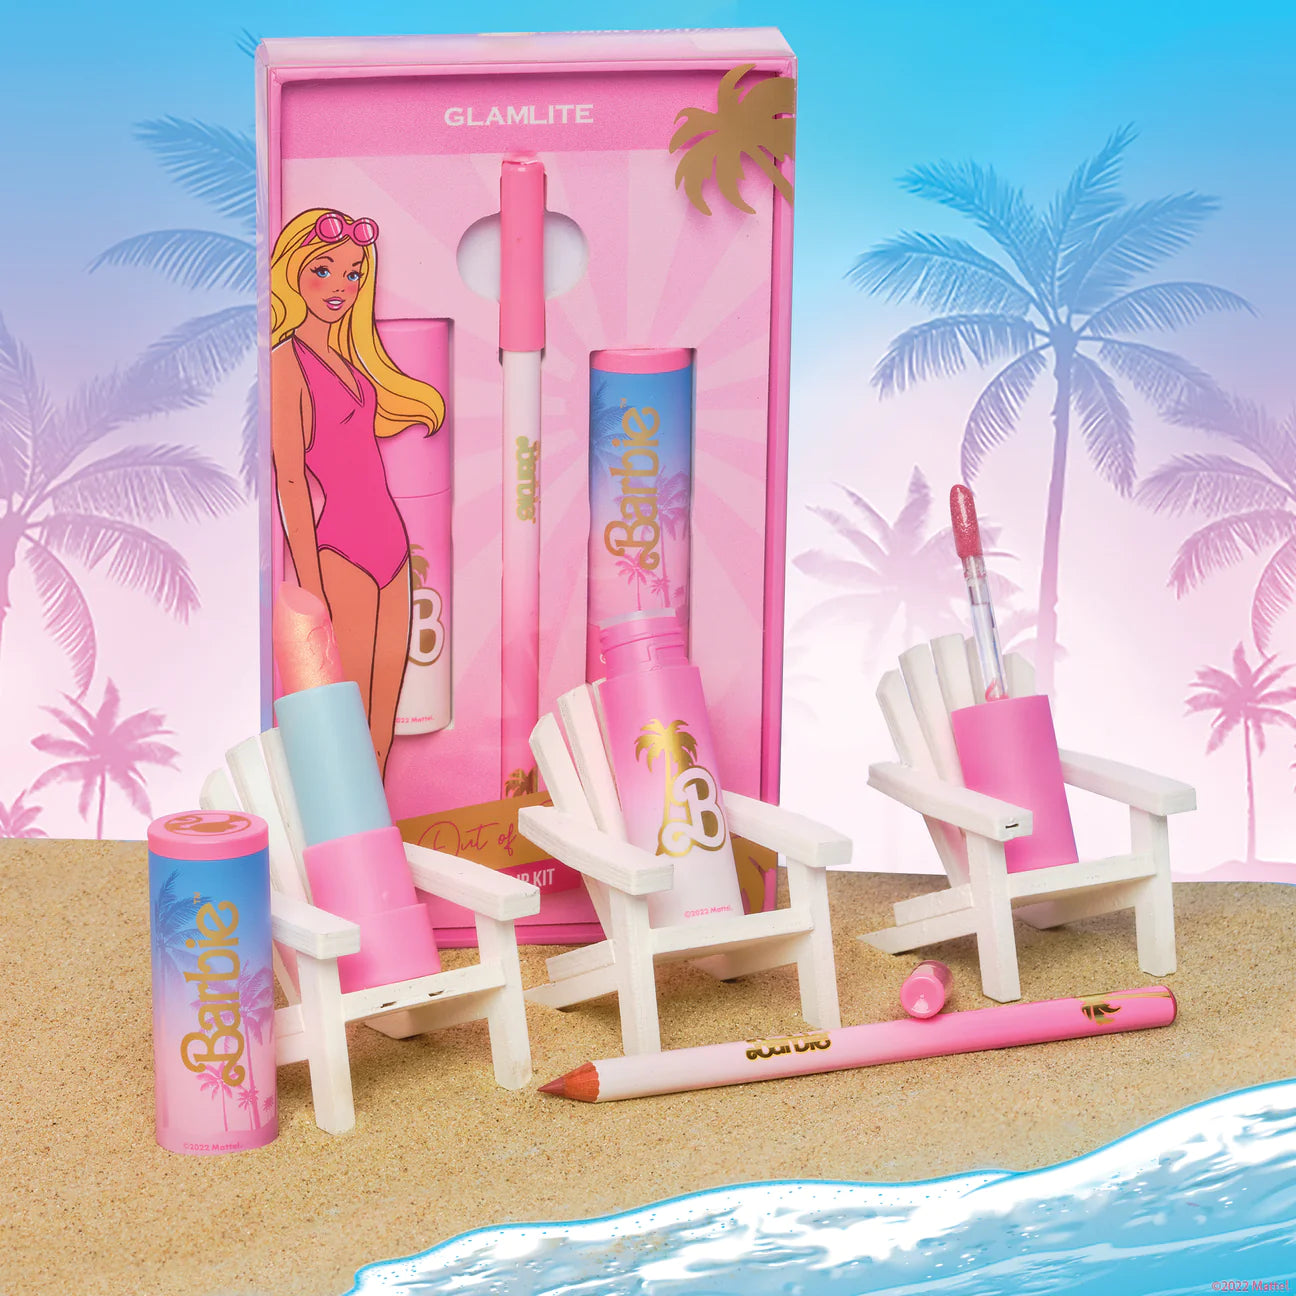 GLAMLITE, Barbie X Glamlite out of office lip kit.